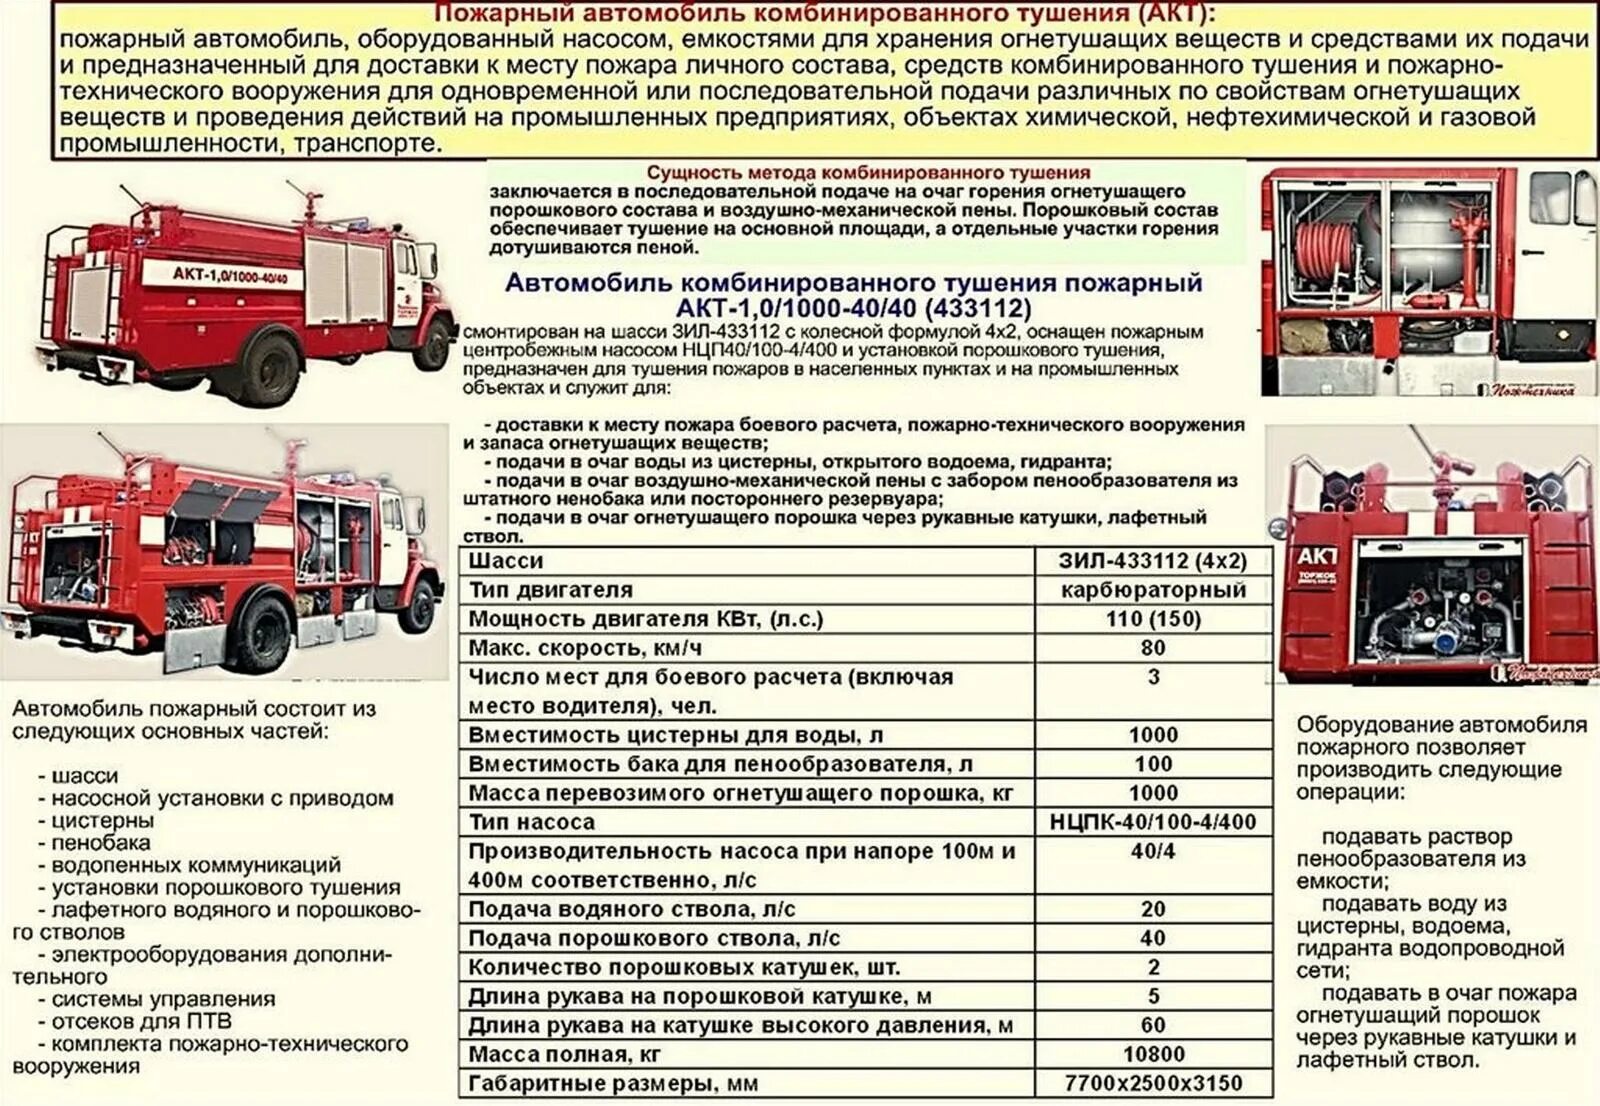 ТТХ пожарного автомобиля КАМАЗ. ТТХ КАМАЗ 53215 пожарного автомобиля. ТТХ 43118 пожарного автомобиля. Масса пожарного автомобиля КАМАЗ.